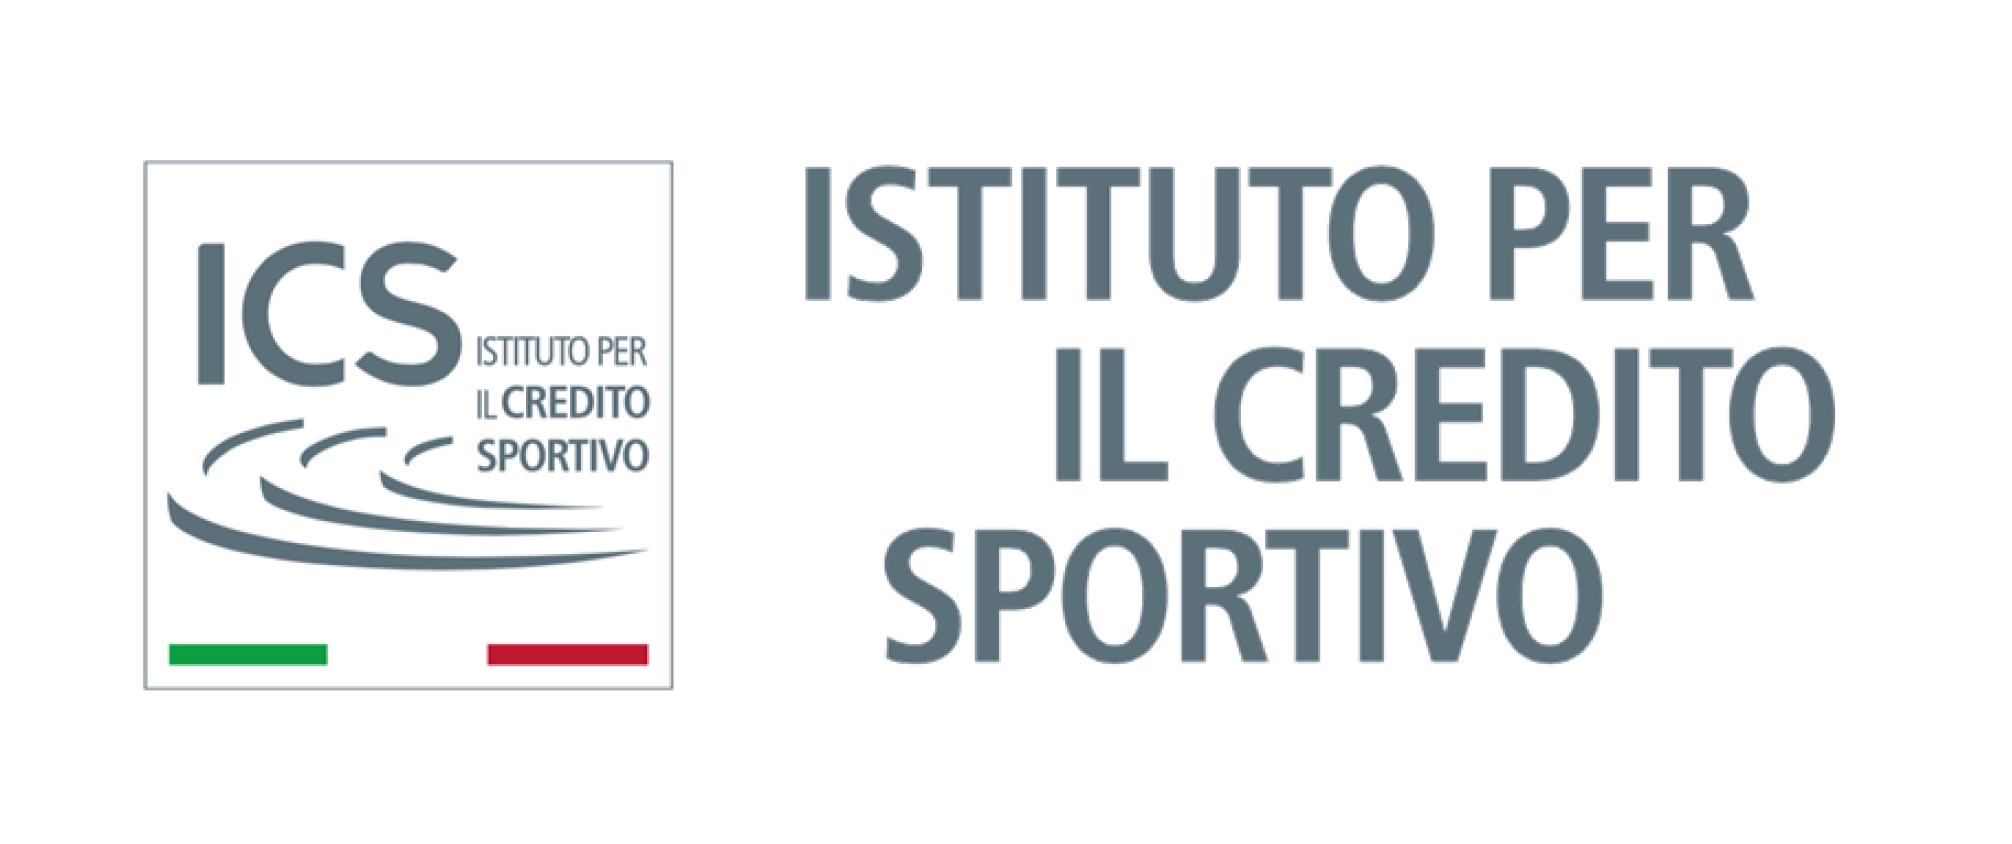 images/immagini/immagini_news/Istituto_Credito_Sportivo.png